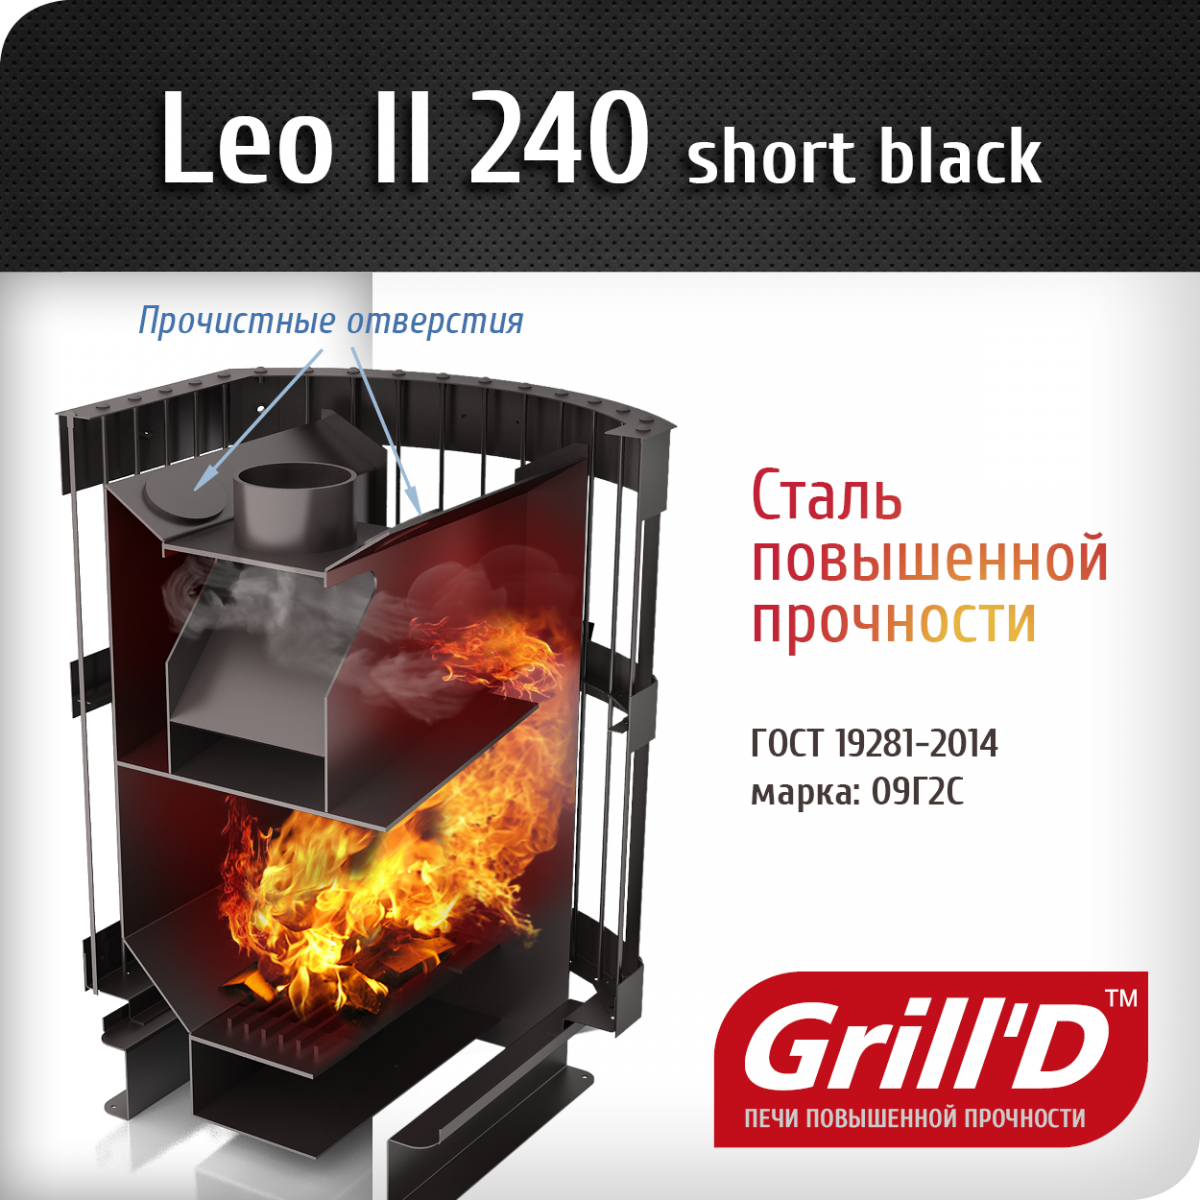 Фото товара Банная печь Grill'D Leo II 240 Short black. Изображение №2